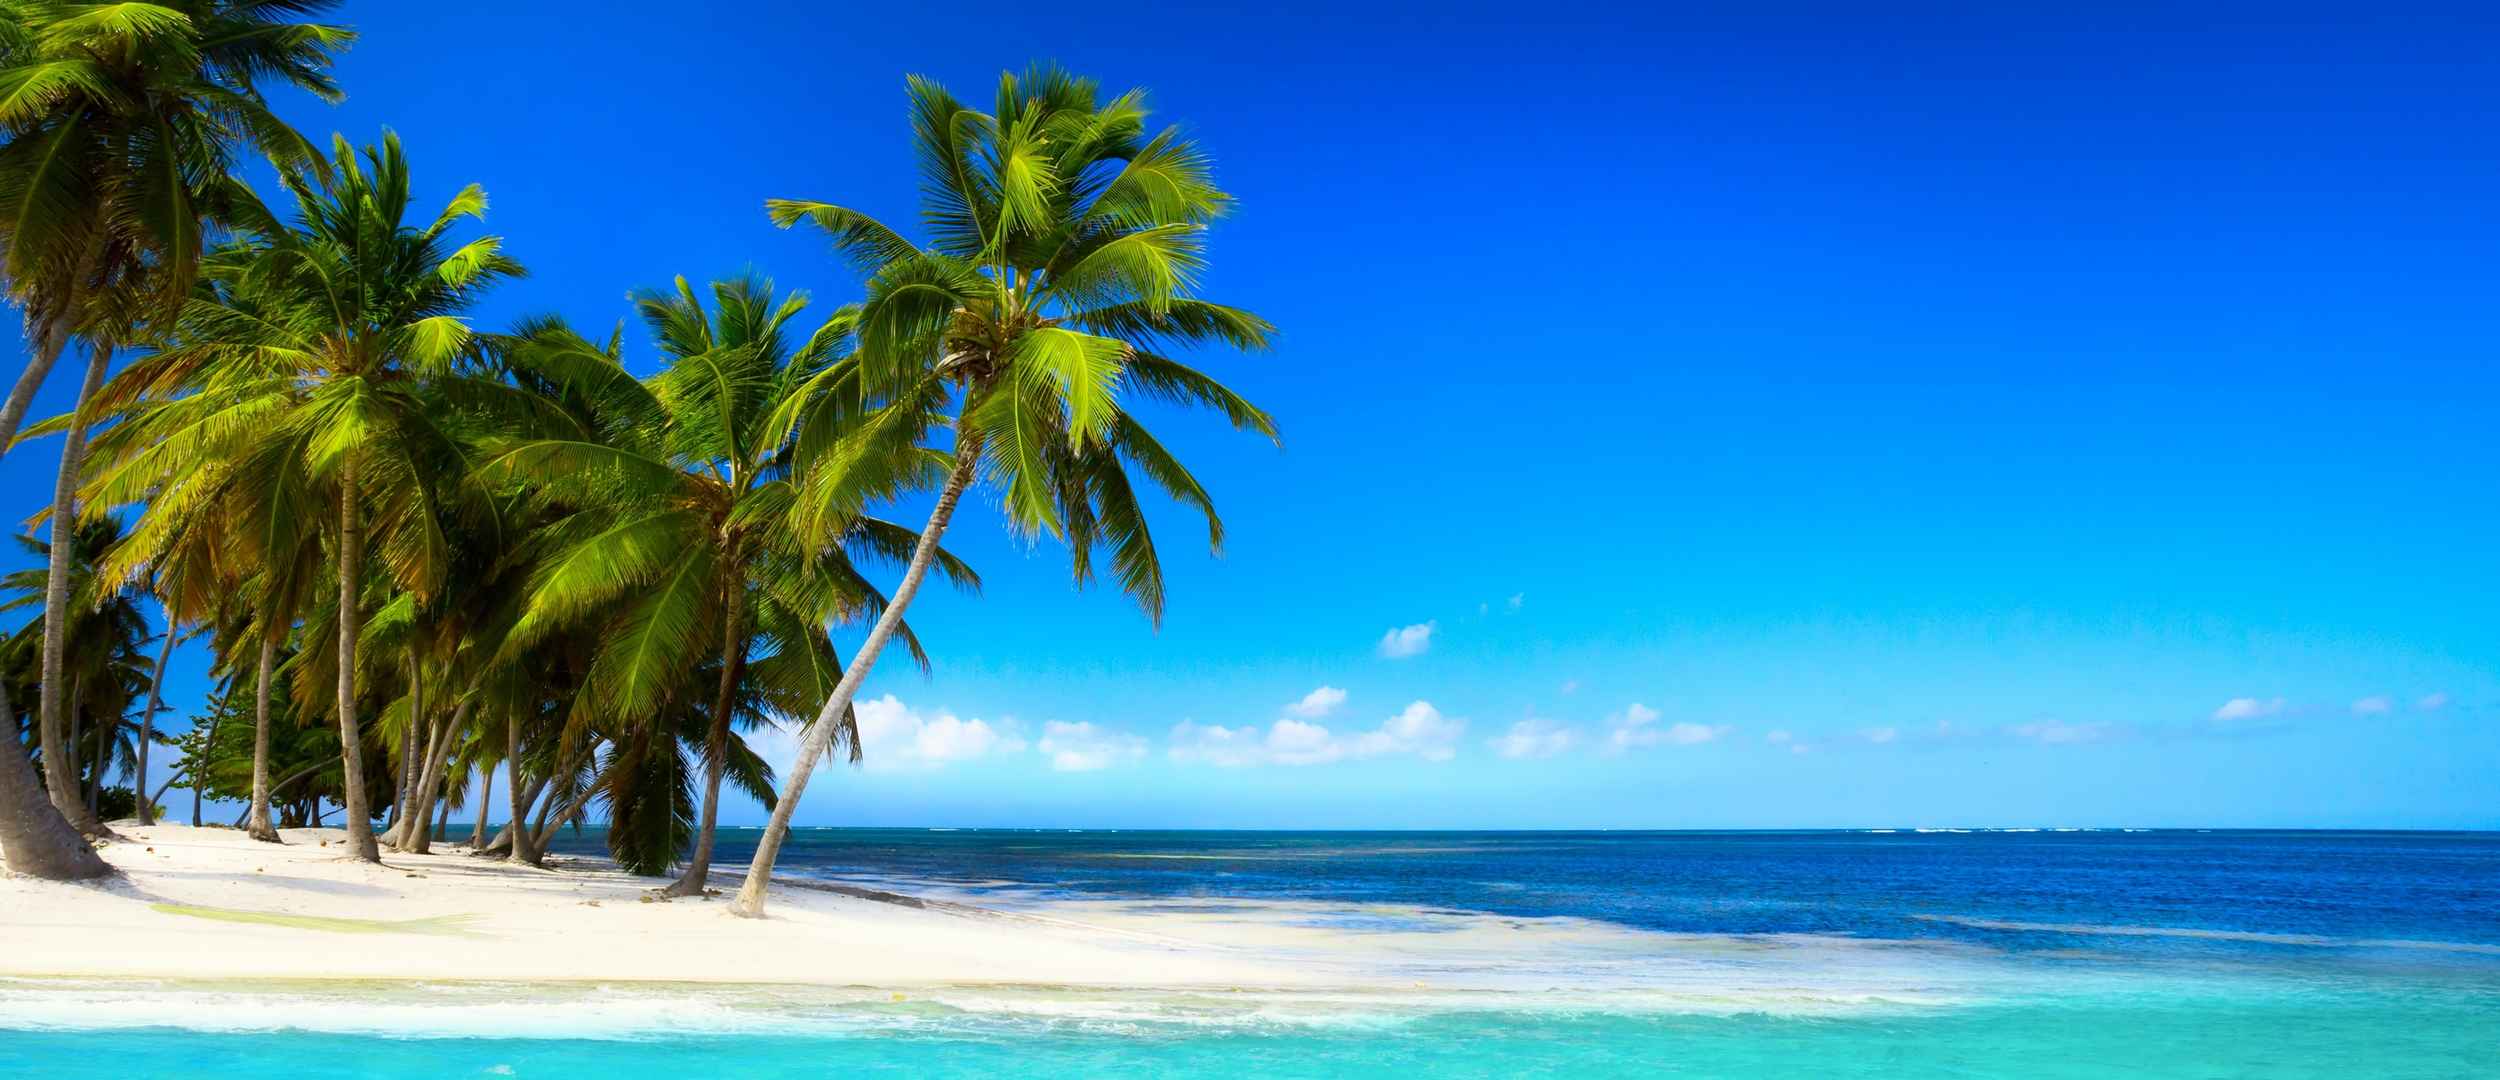 热带地区沙滩棕榈树蓝色大海天空风景图片